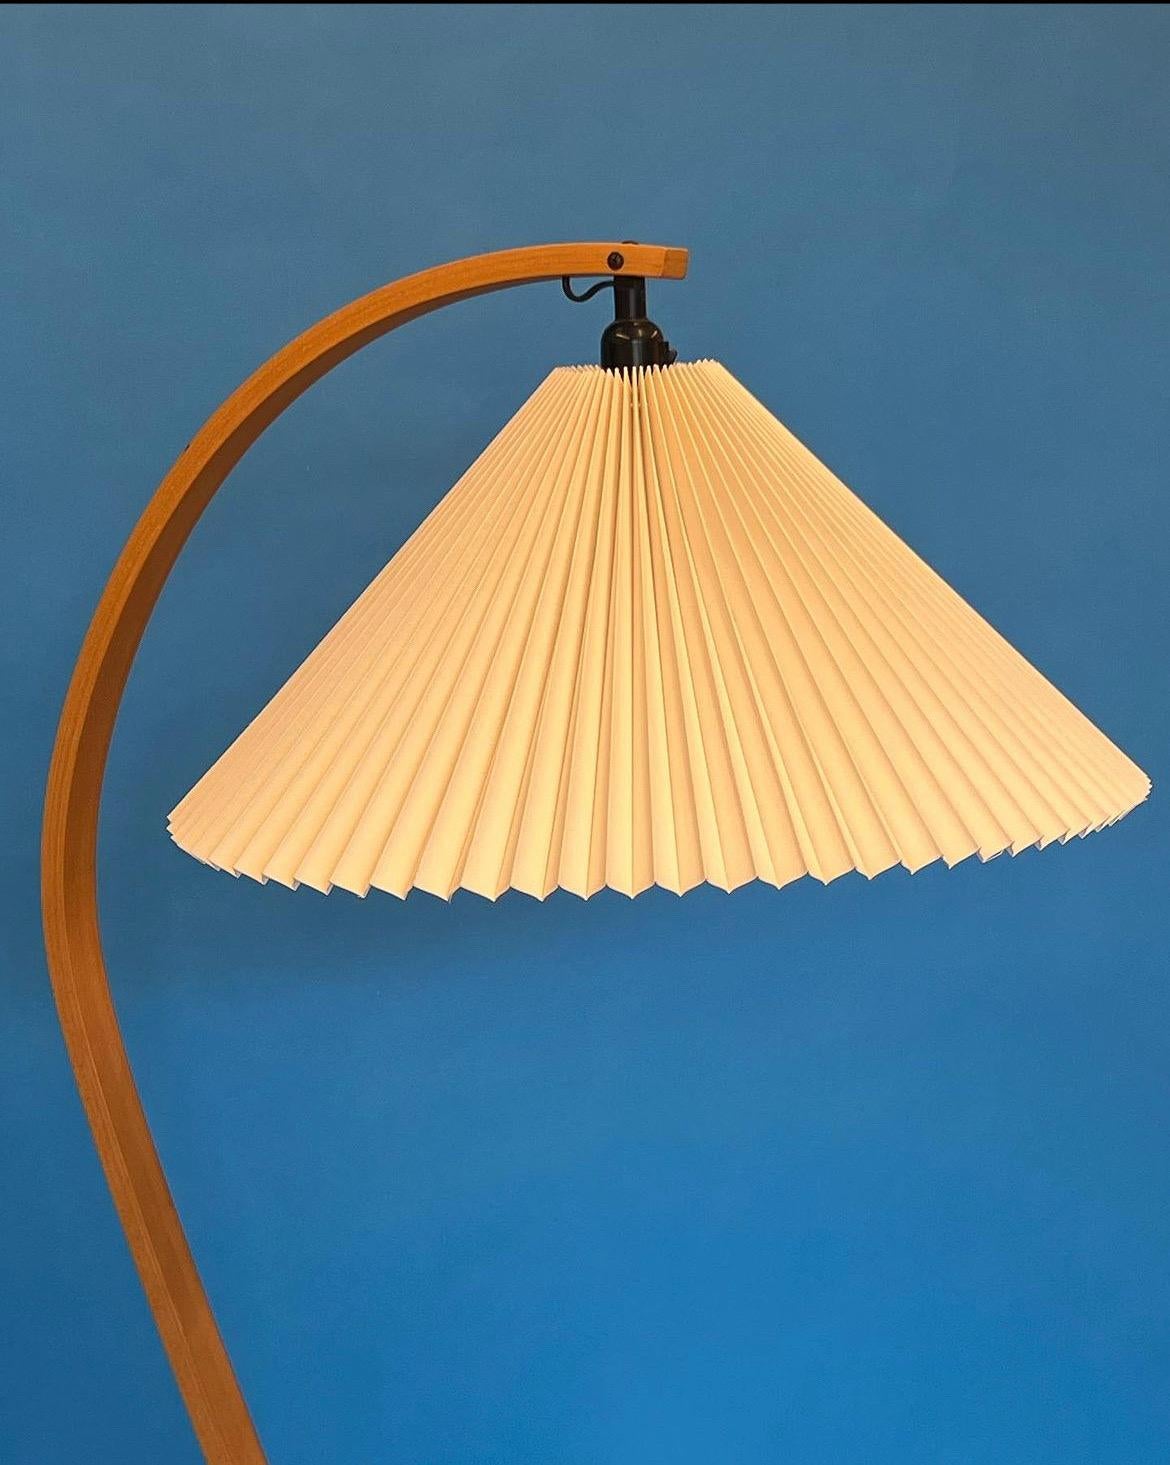 Lampadaire conçu par Caprani Light AS, vers les années 1970. La lampe présente une belle tige en bois de hêtre courbé, une base en forme de croissant en fonte et un abat-jour plissé en lin blanc cassé. La prise est équipée d'un interrupteur